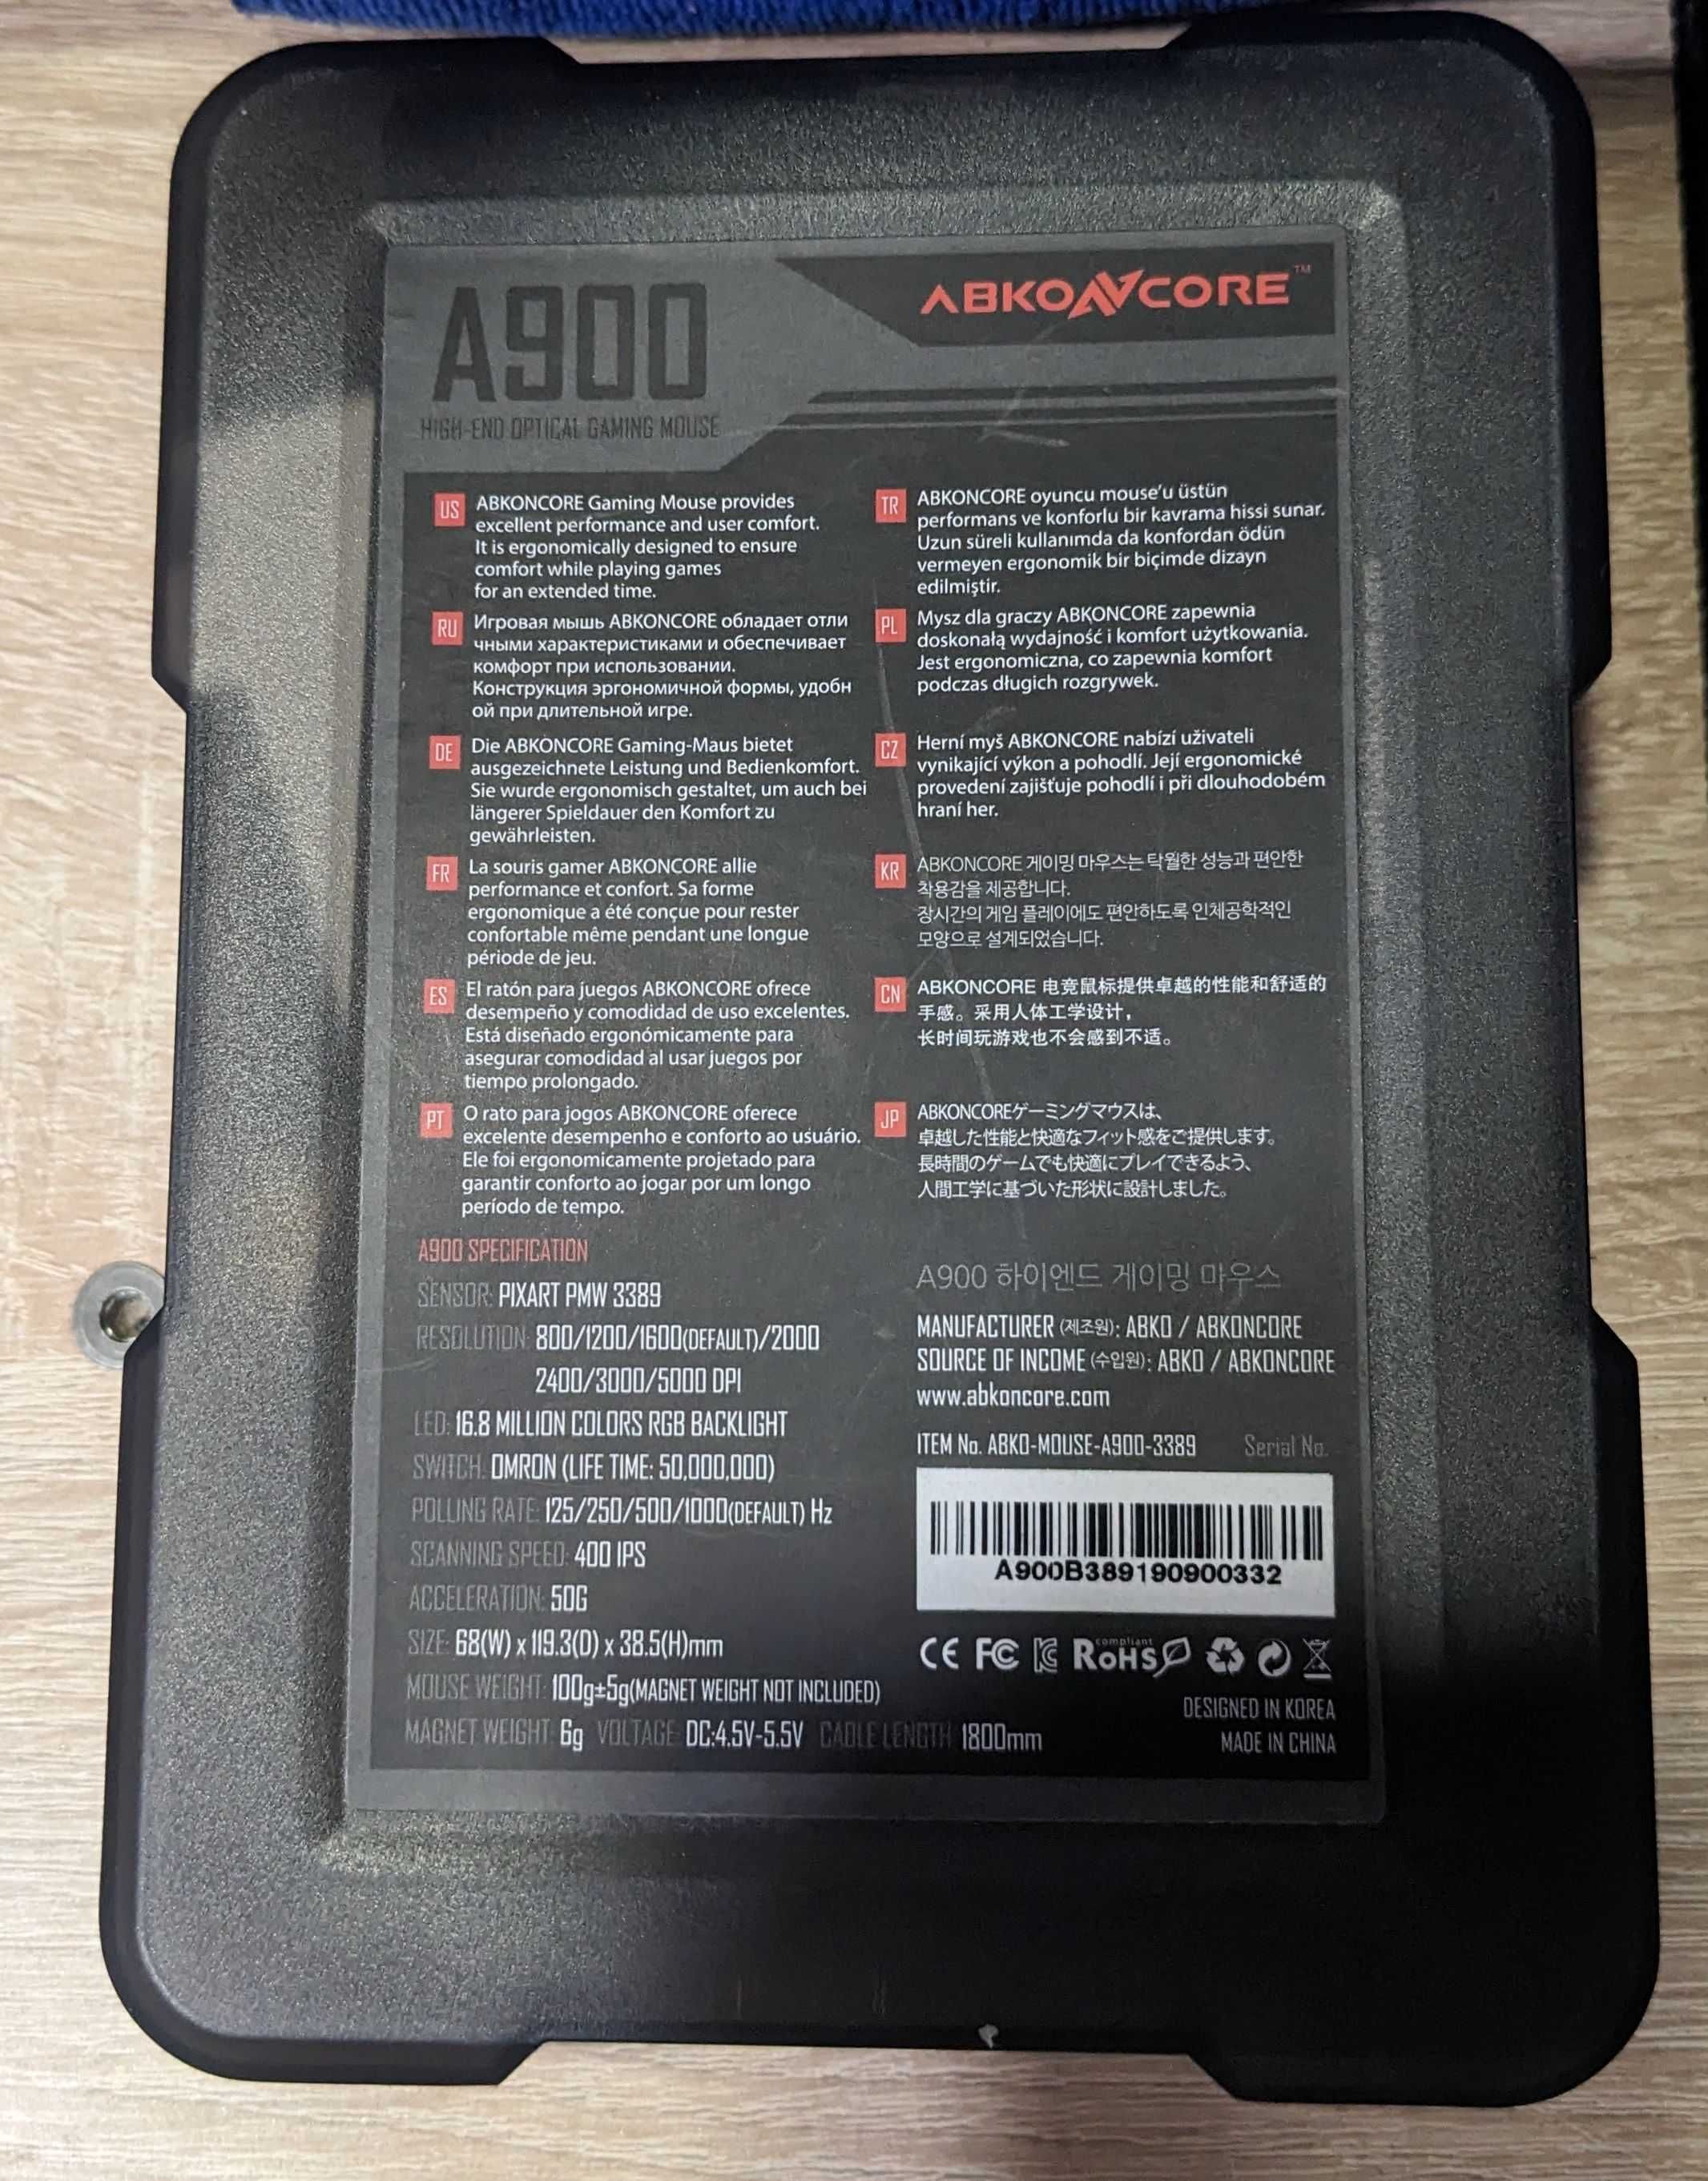 Игровая мышь Abkoncore A900 на сенсоре PixArt 3389